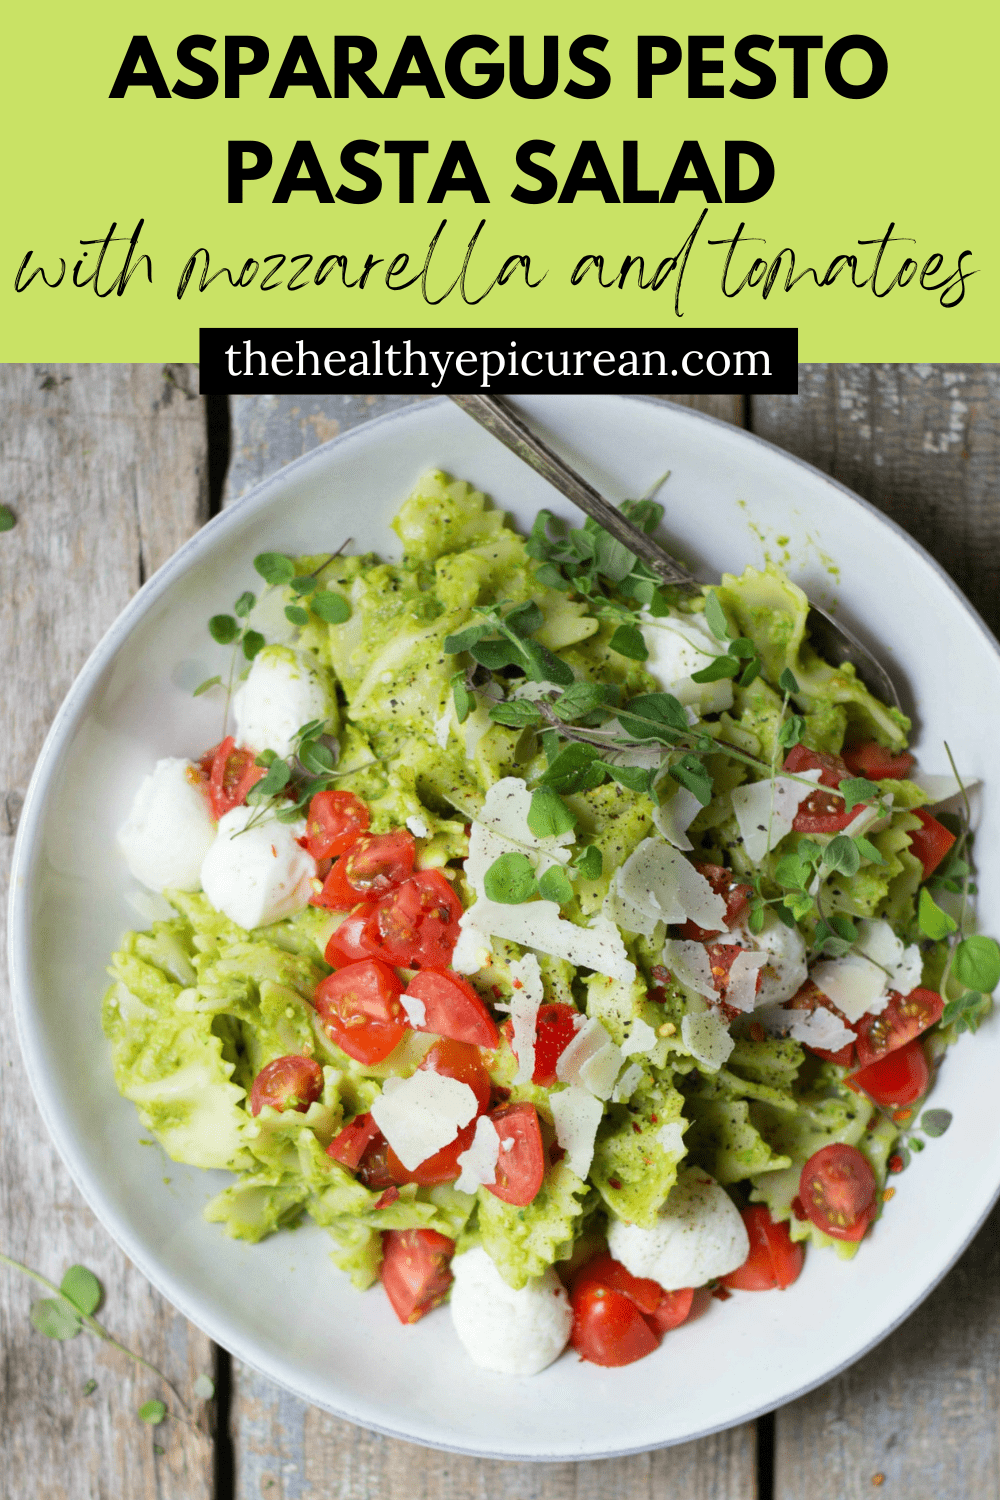 Asparagus Pesto Pasta Salad - The Healthy Epicurean